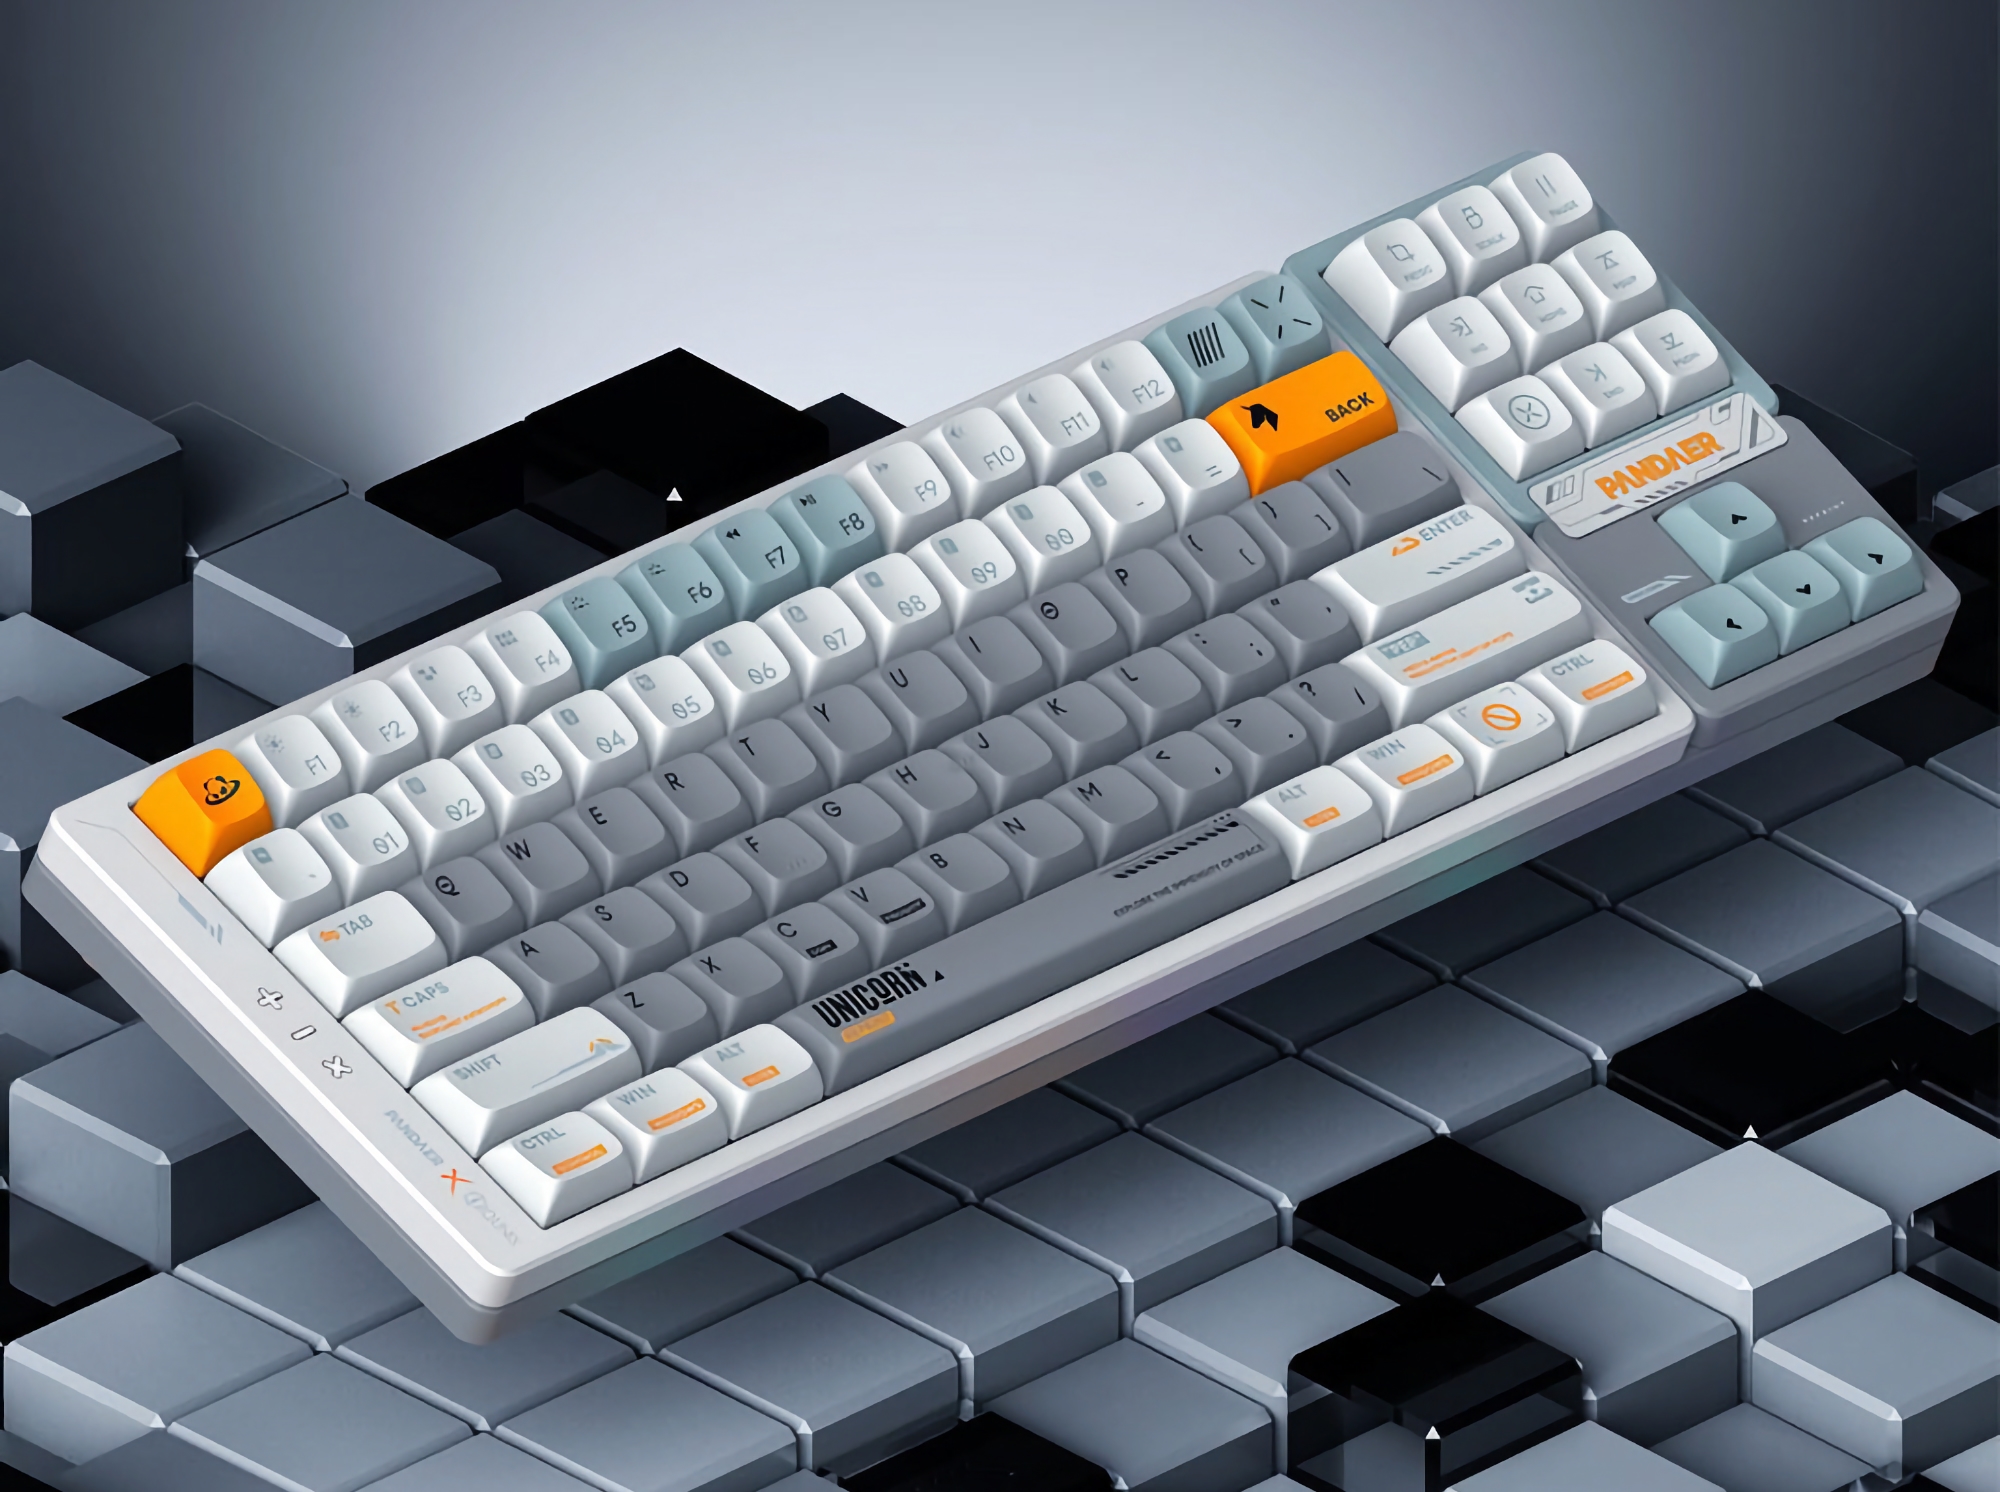 Meizu ha presentado un nuevo teclado mecánico bajo la marca PANDAER con retroiluminación RGB, teclas extraíbles y tres modos de conexión